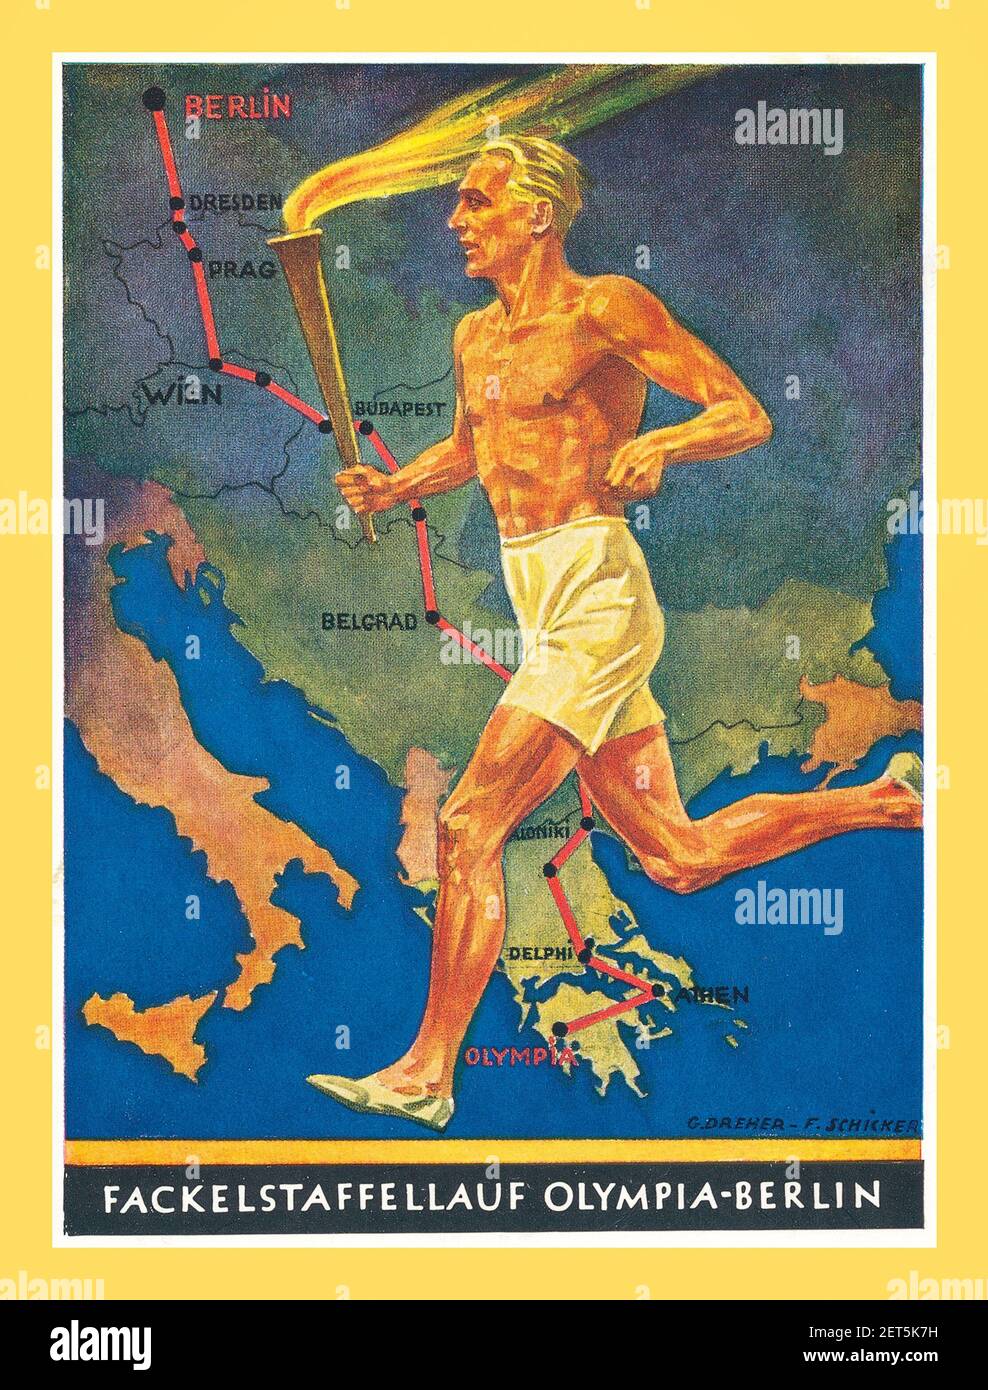 Olimpiadi di Berlino 1936 Vintage Propaganda Poster Germania nazista Giochi olimpici Torch Relay dalla Grecia a Berlino Germania 'fackelstaffellauf Olimpia-Berlino' Foto Stock